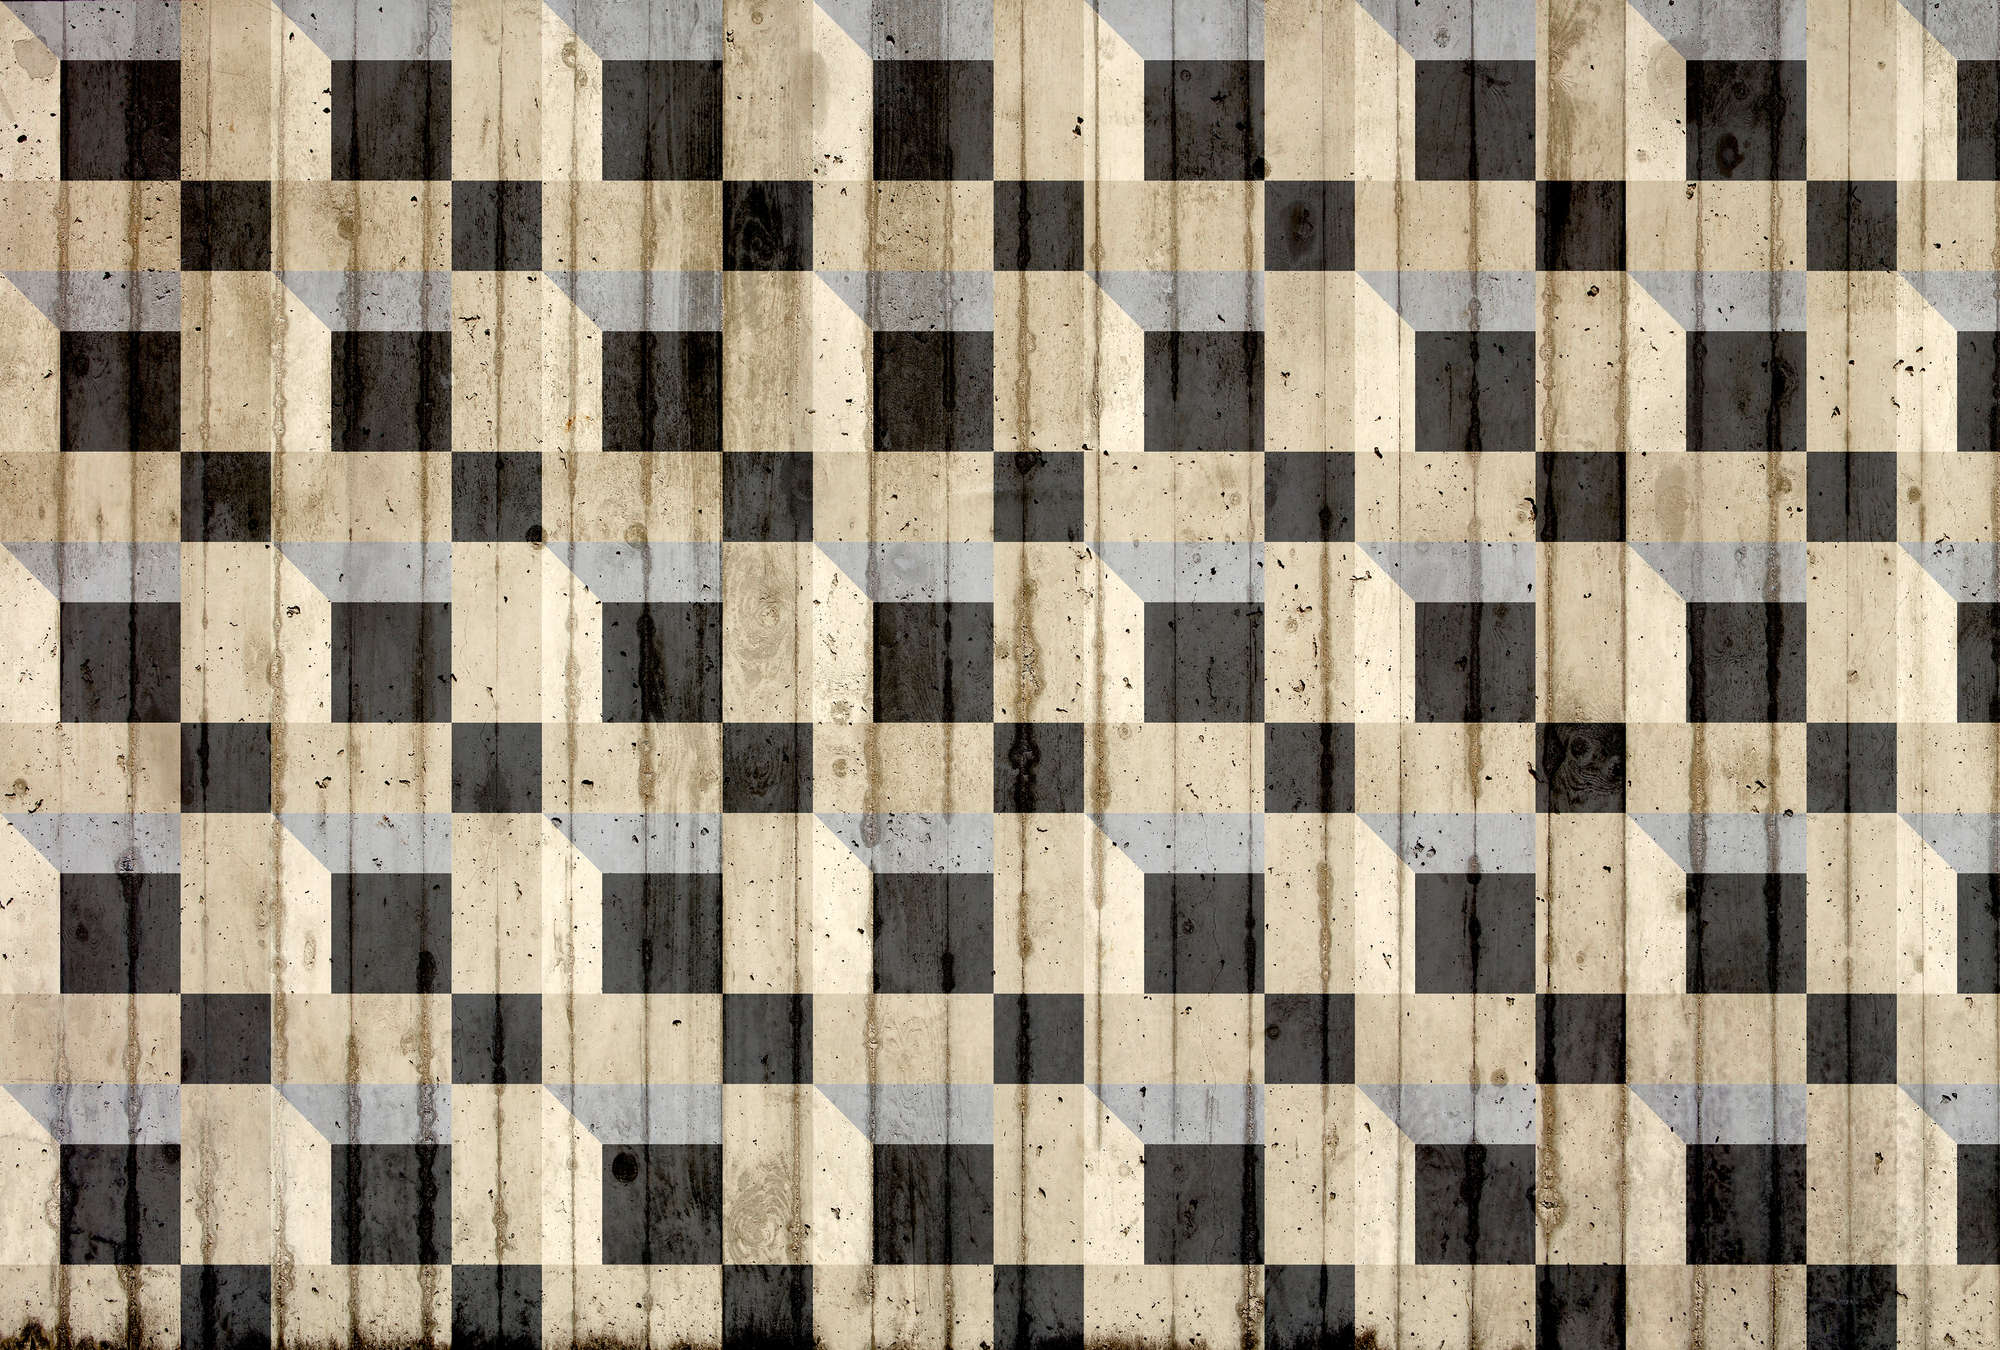             Papel pintado de hormigón con aspecto de capas y patrón de cubos - Beige, negro, gris
        